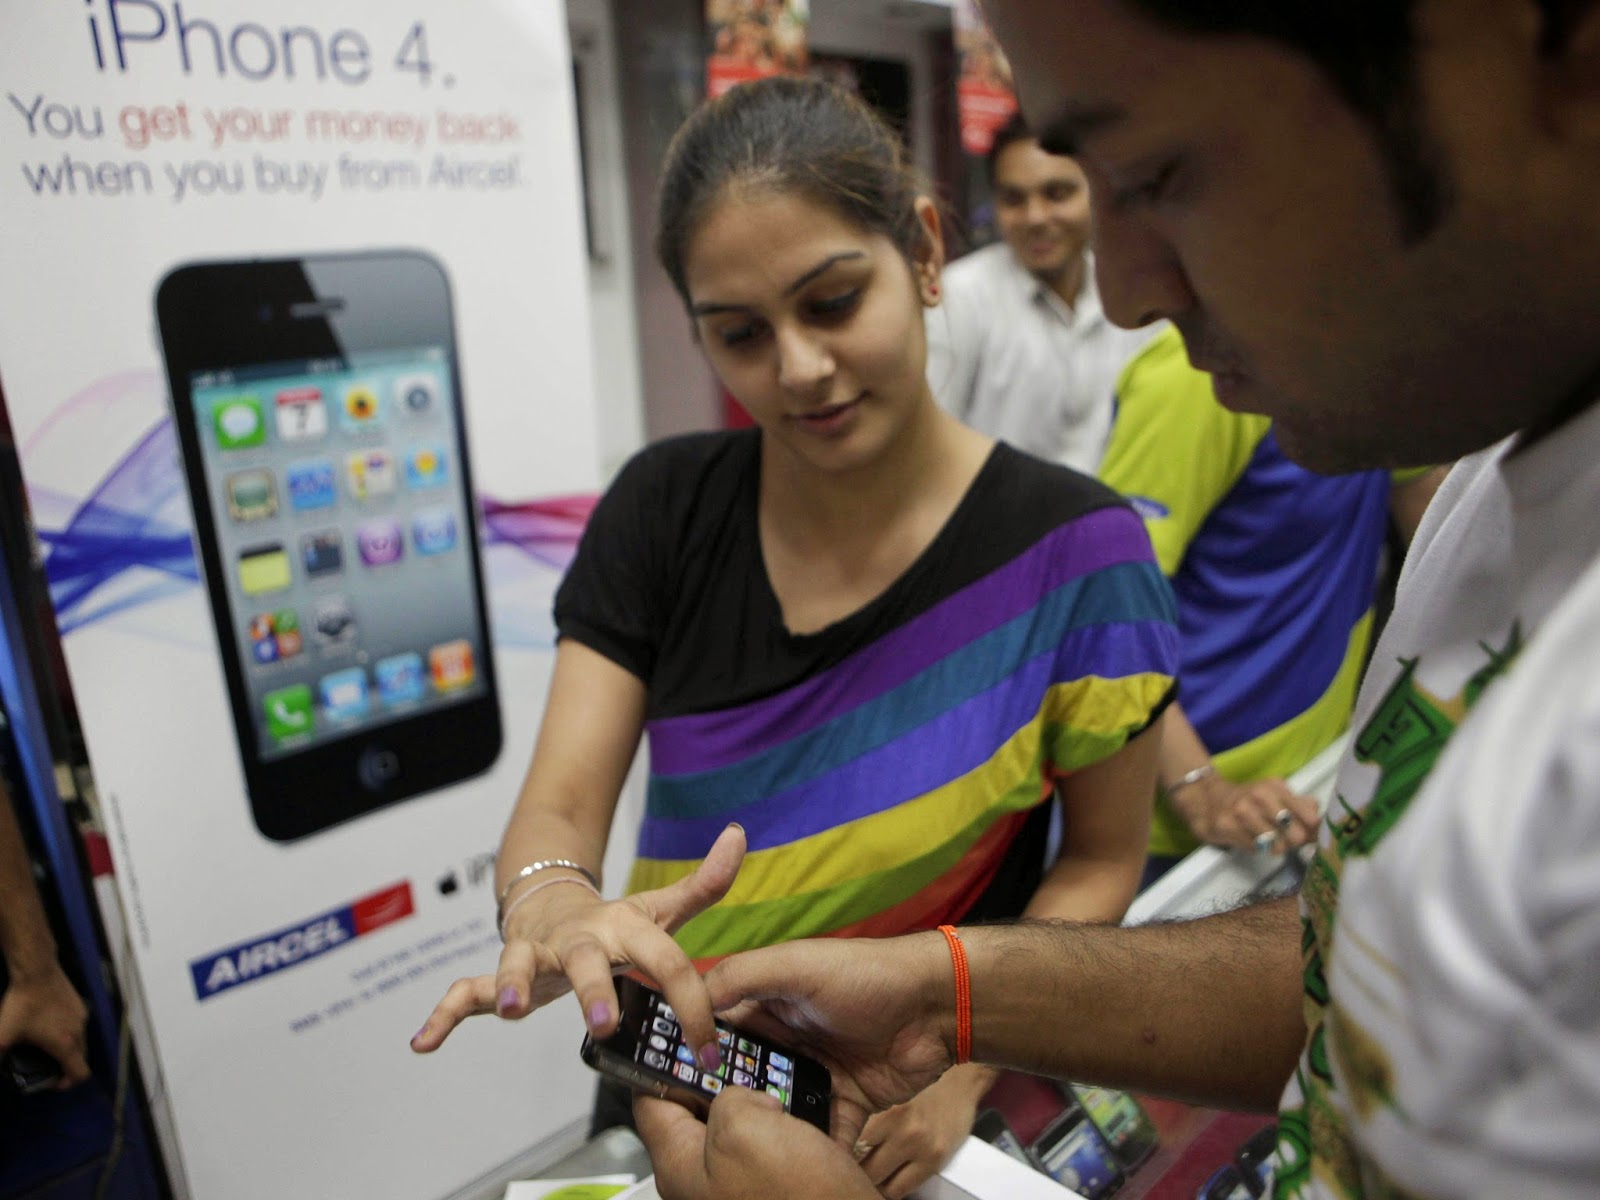 Πόσες ημέρες πρέπει να δουλέψει κάποιος στην Ινδία για να αποκτήσει το νέο iPhone; - Φωτογραφία 1